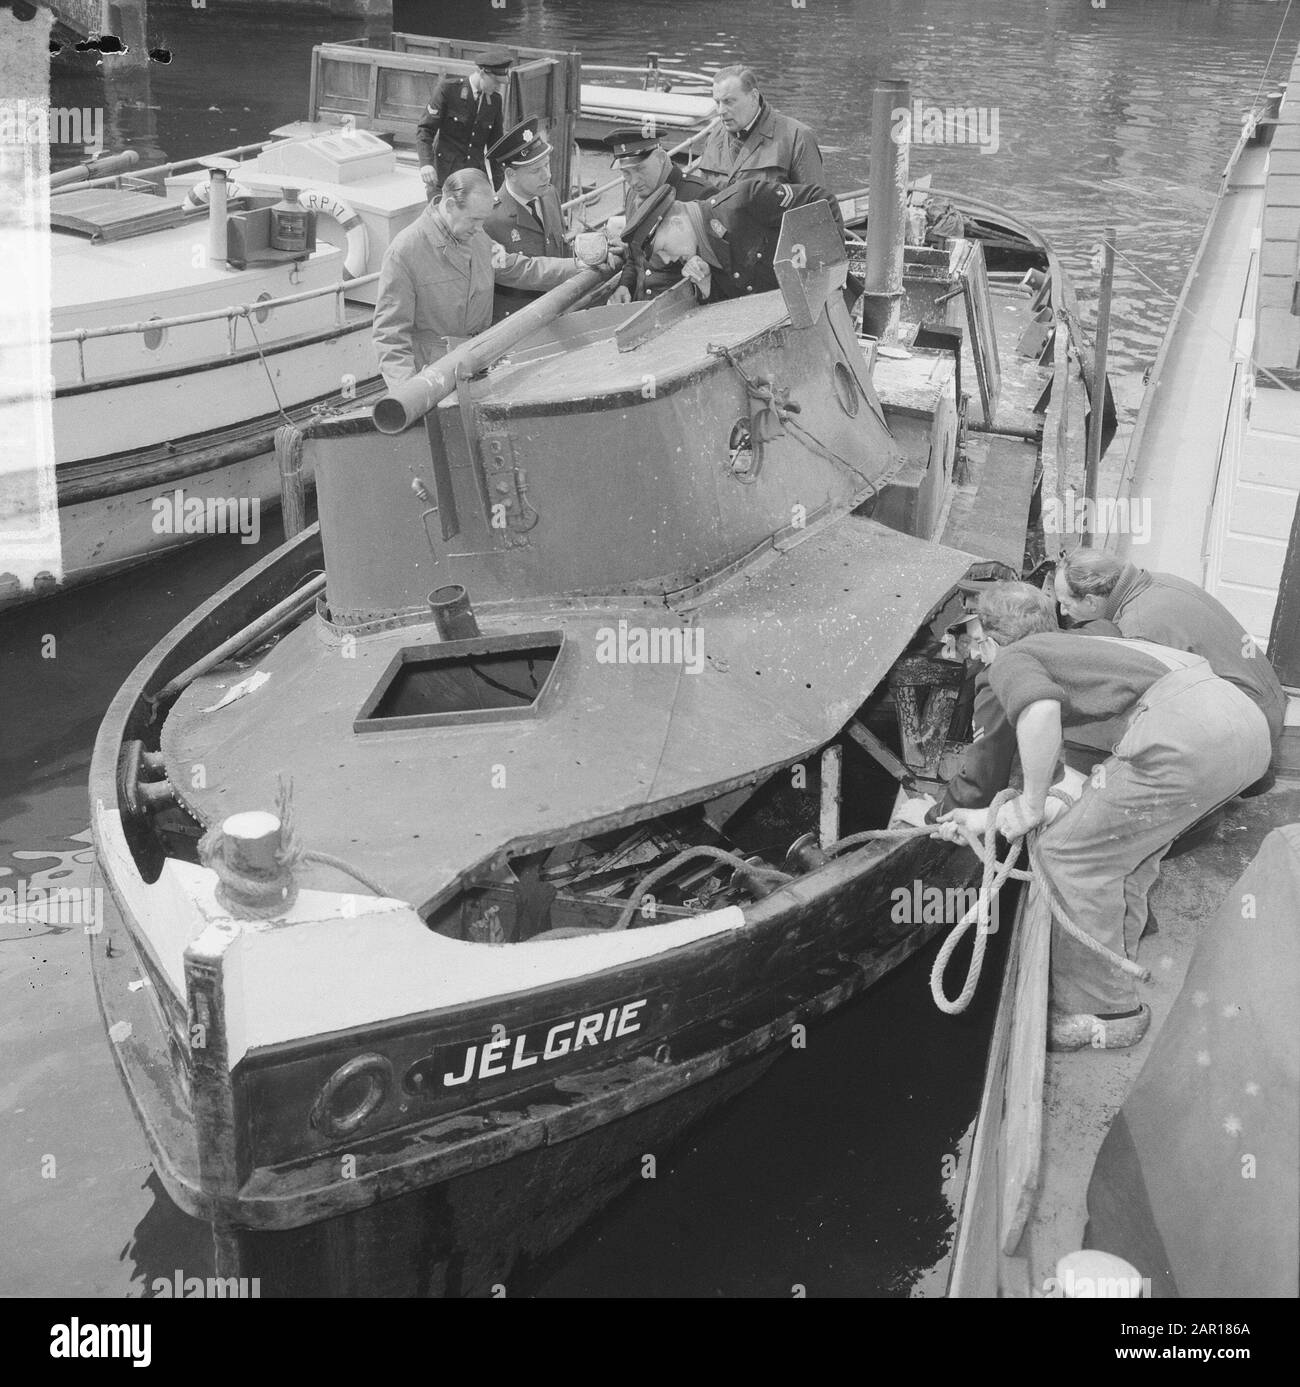 Schleppboot explodierte innen in Amsterdam de Jelgrie, dessen Oberdeck abgerissen wurde Datum: 27. april 1965 Standort: Amsterdam, Noord-Holland Schlagwörter: Explosionen, Schlepper Stockfoto